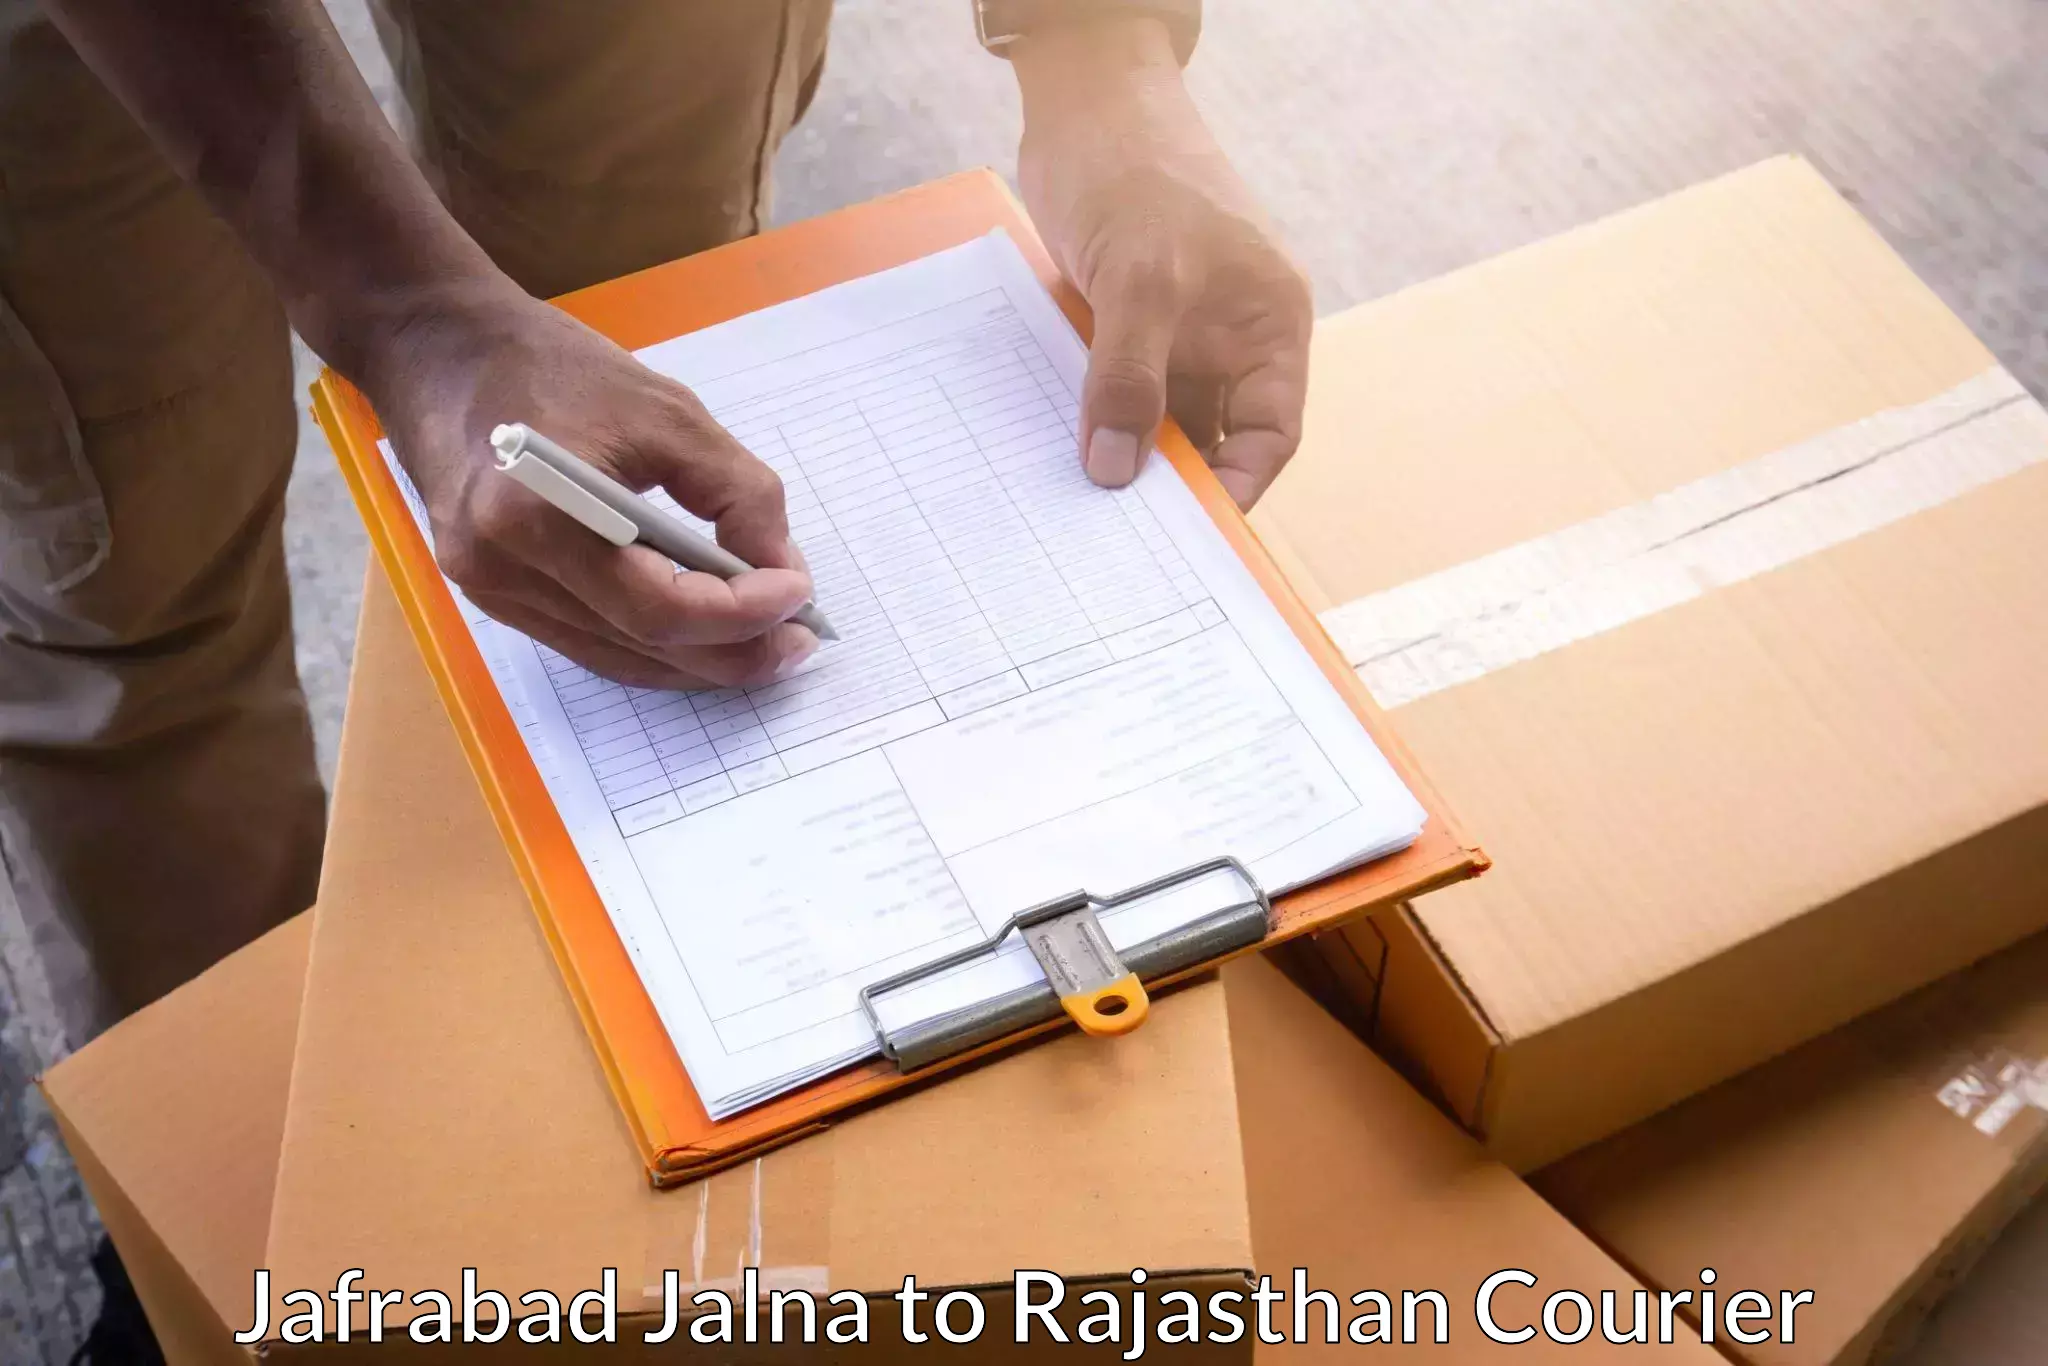 Expedited parcel delivery in Jafrabad Jalna to Khetri Nagar